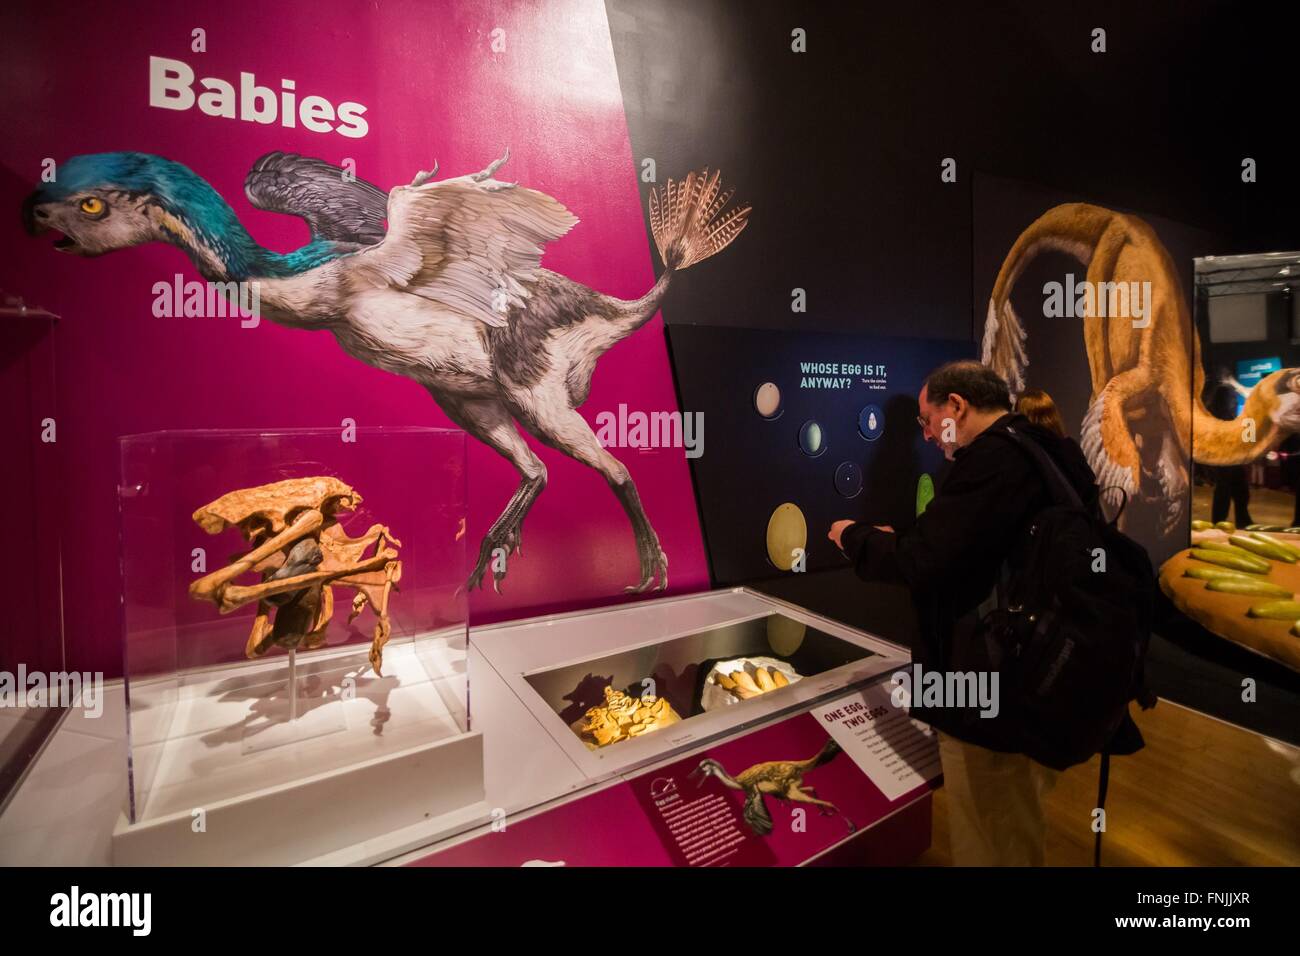 (160315)--NEW YORK, 15. März 2016 (Xinhua)--A Besucher schaut auf Dinosaurier-Fossilien während der "Dinosaurier Among Us"-Ausstellung in das American Museum of Natural History in New York, USA, 15. März 2016. Das American Museum of Natural History neue Ausstellung "Dinosaurier Among Us" wird vom 21. März 2016, 2. Januar 2017 für die Öffentlichkeit zugänglich. Die Ausstellung zeigt die evolutionären Verbindung zwischen Dinosauriern und moderne durch seltene Fossilien und lebensechten Modellen der gefiederten Dinosaurier und primitive Vögel, von denen viele in der chinesischen Provinz Liaoning entdeckt wurden. (Xinhua/Li C Stockfoto